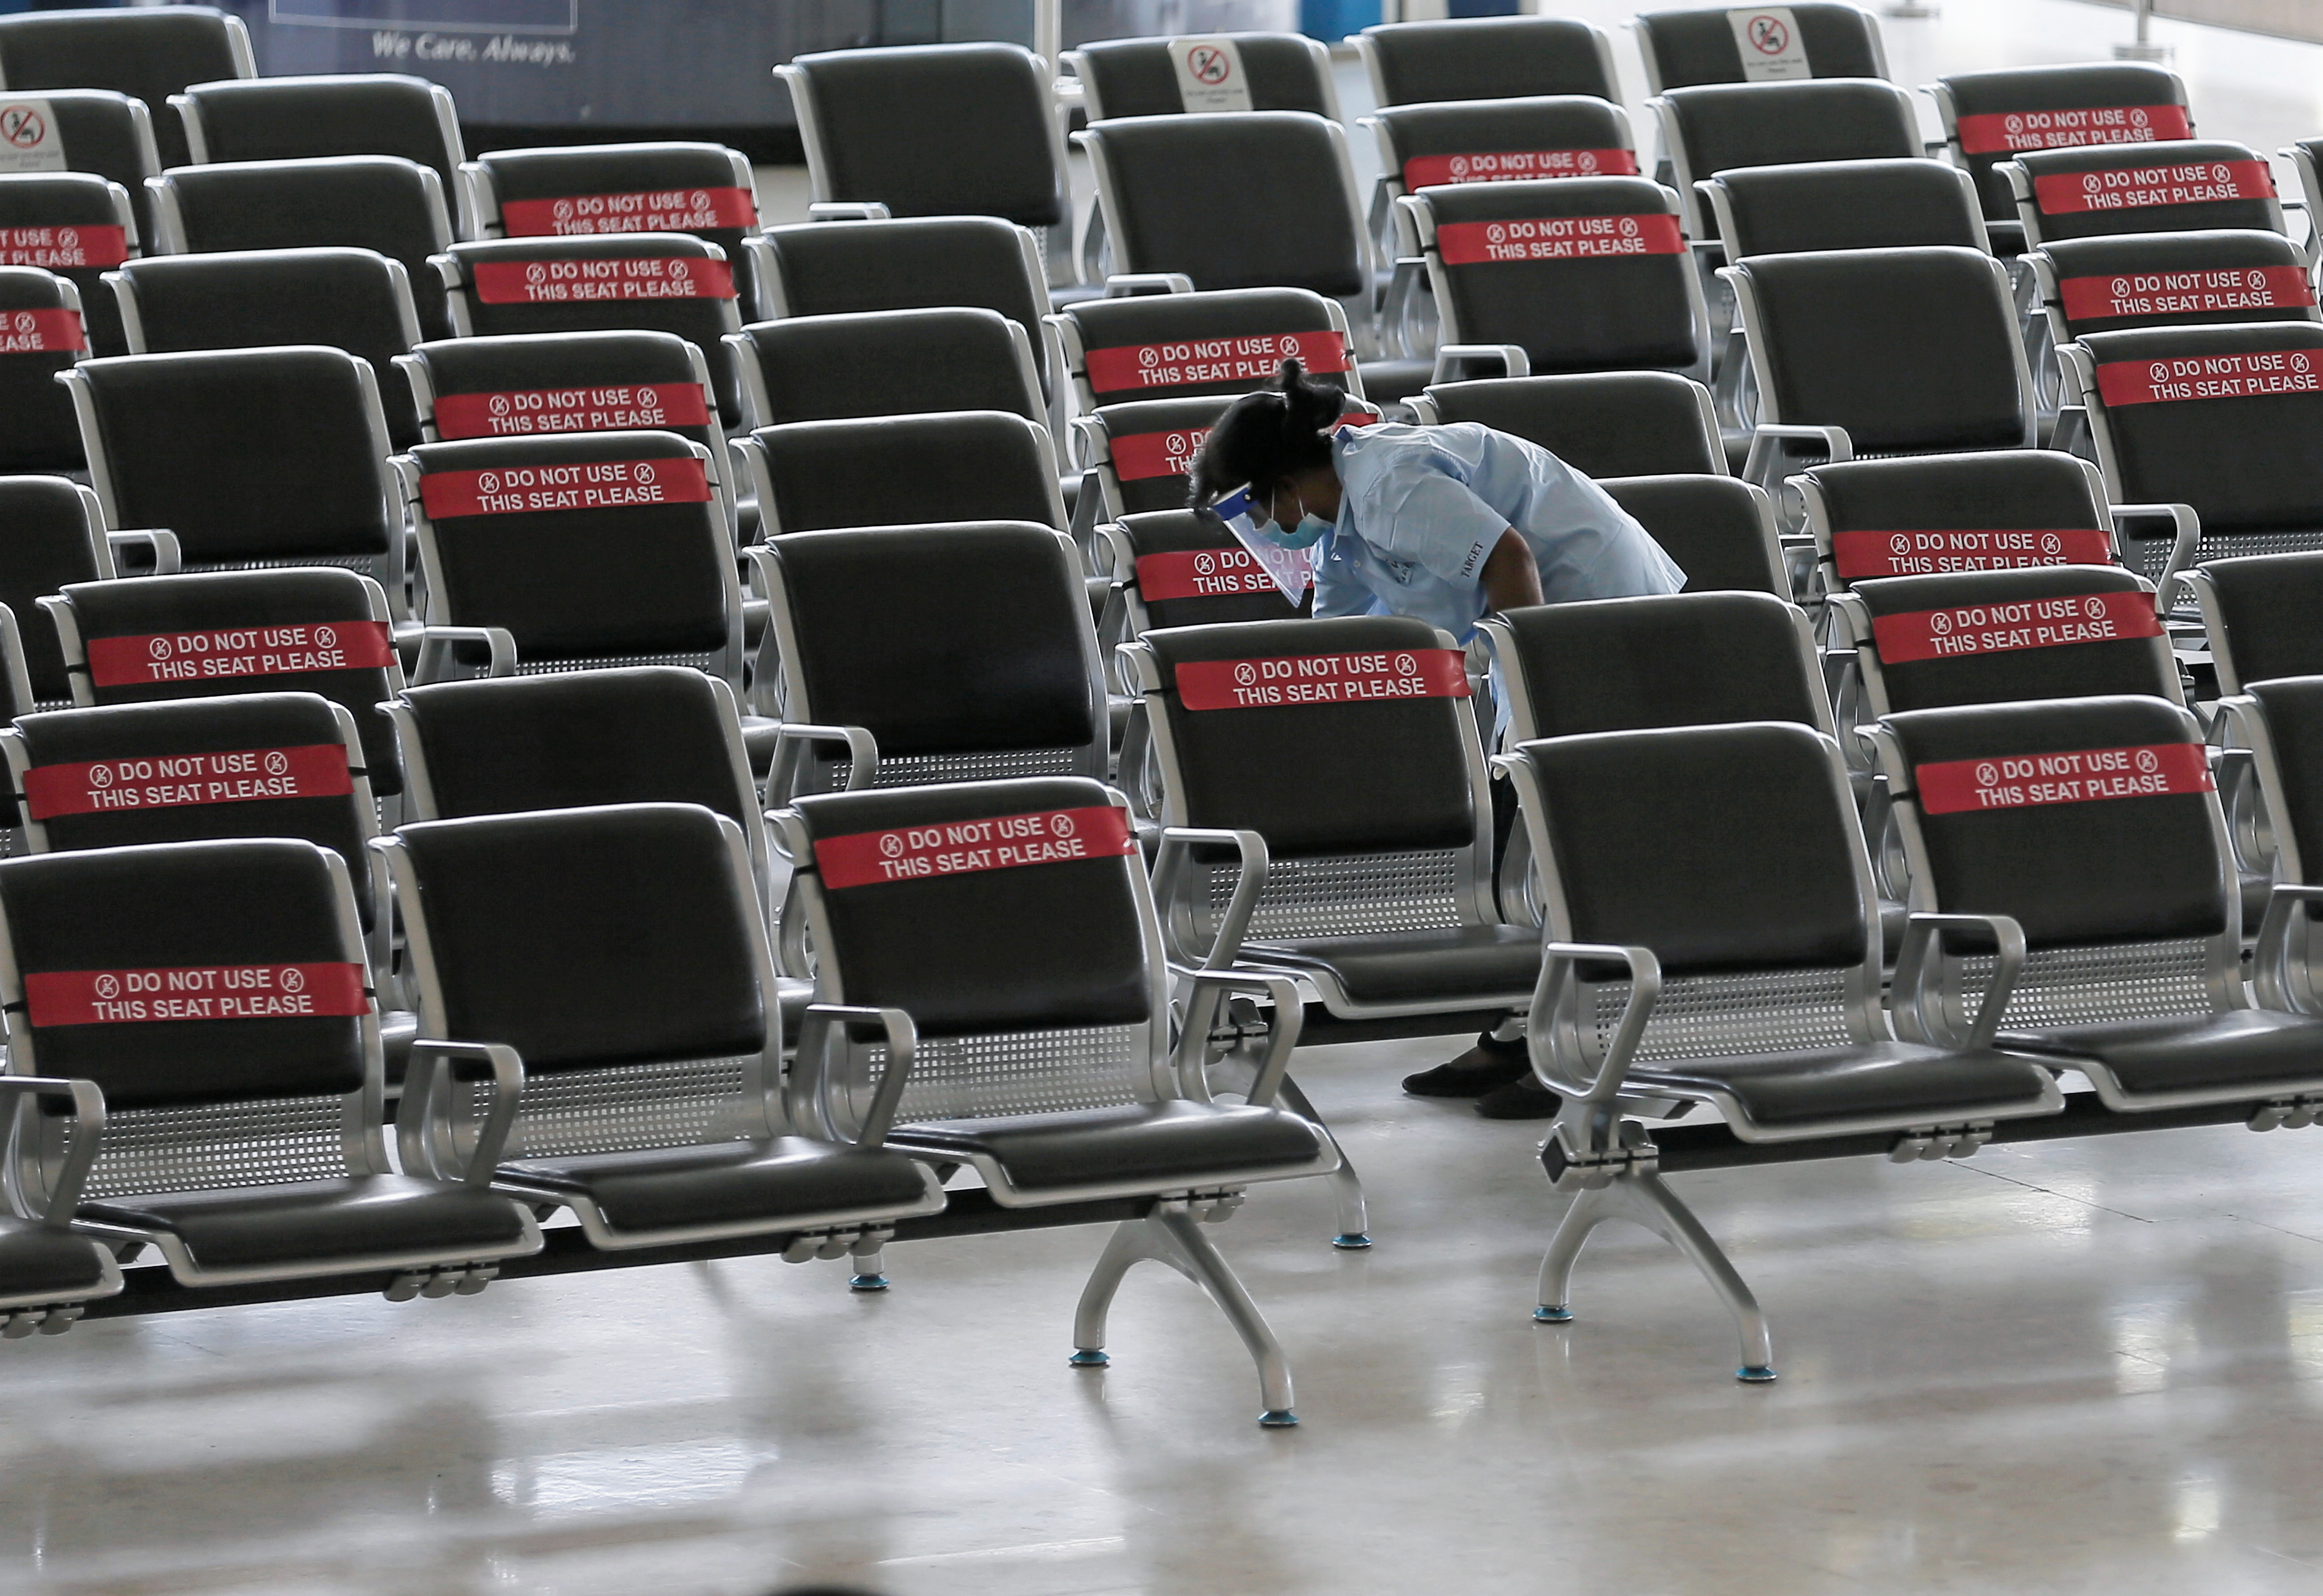 Tourism amid COVID-19 pandemic, at Bandaranaike International Airport in Katunayake